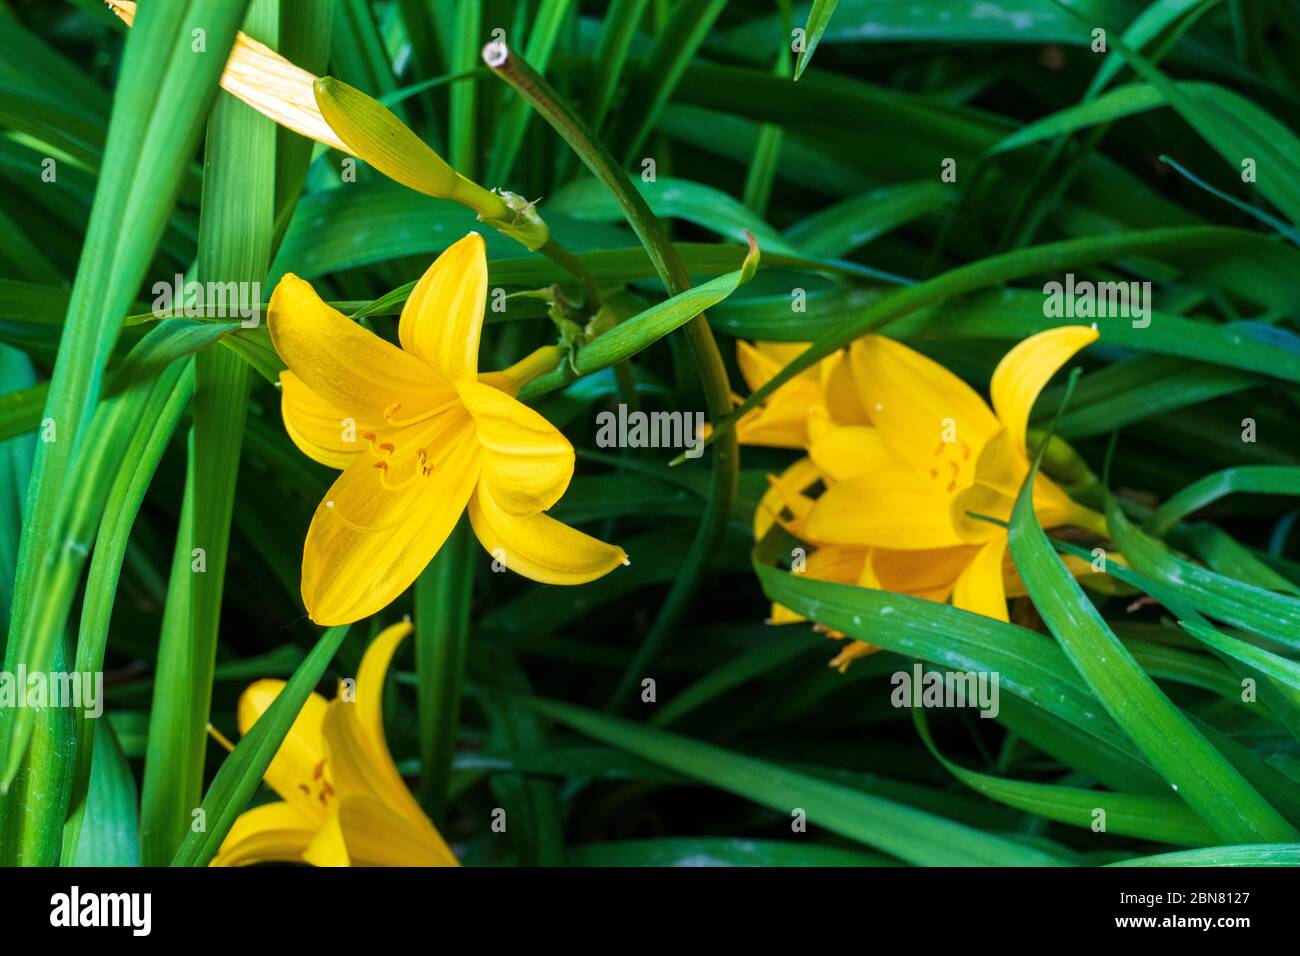 Asiatische gelbe Lilie mit Blatt Hintergrund Stock Photo